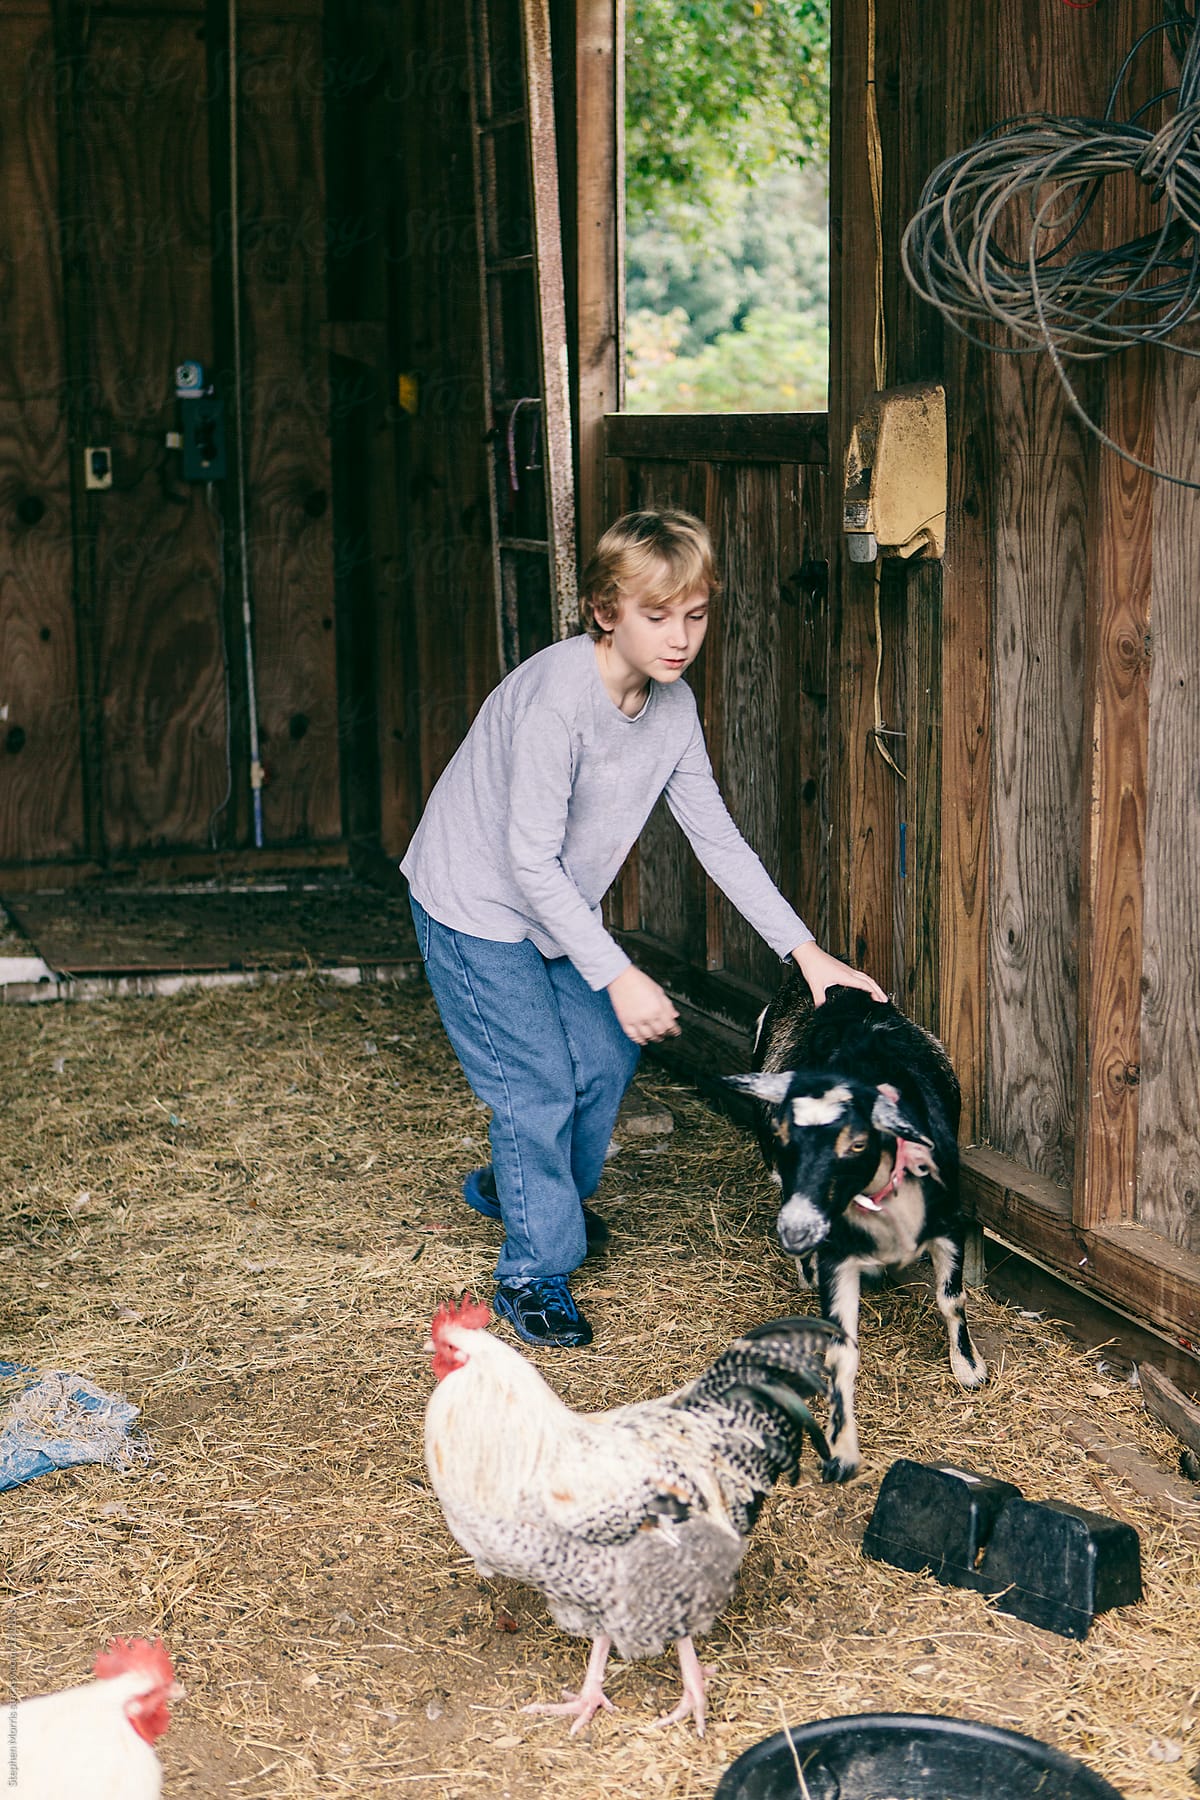 A boy chasing a goat in a barn